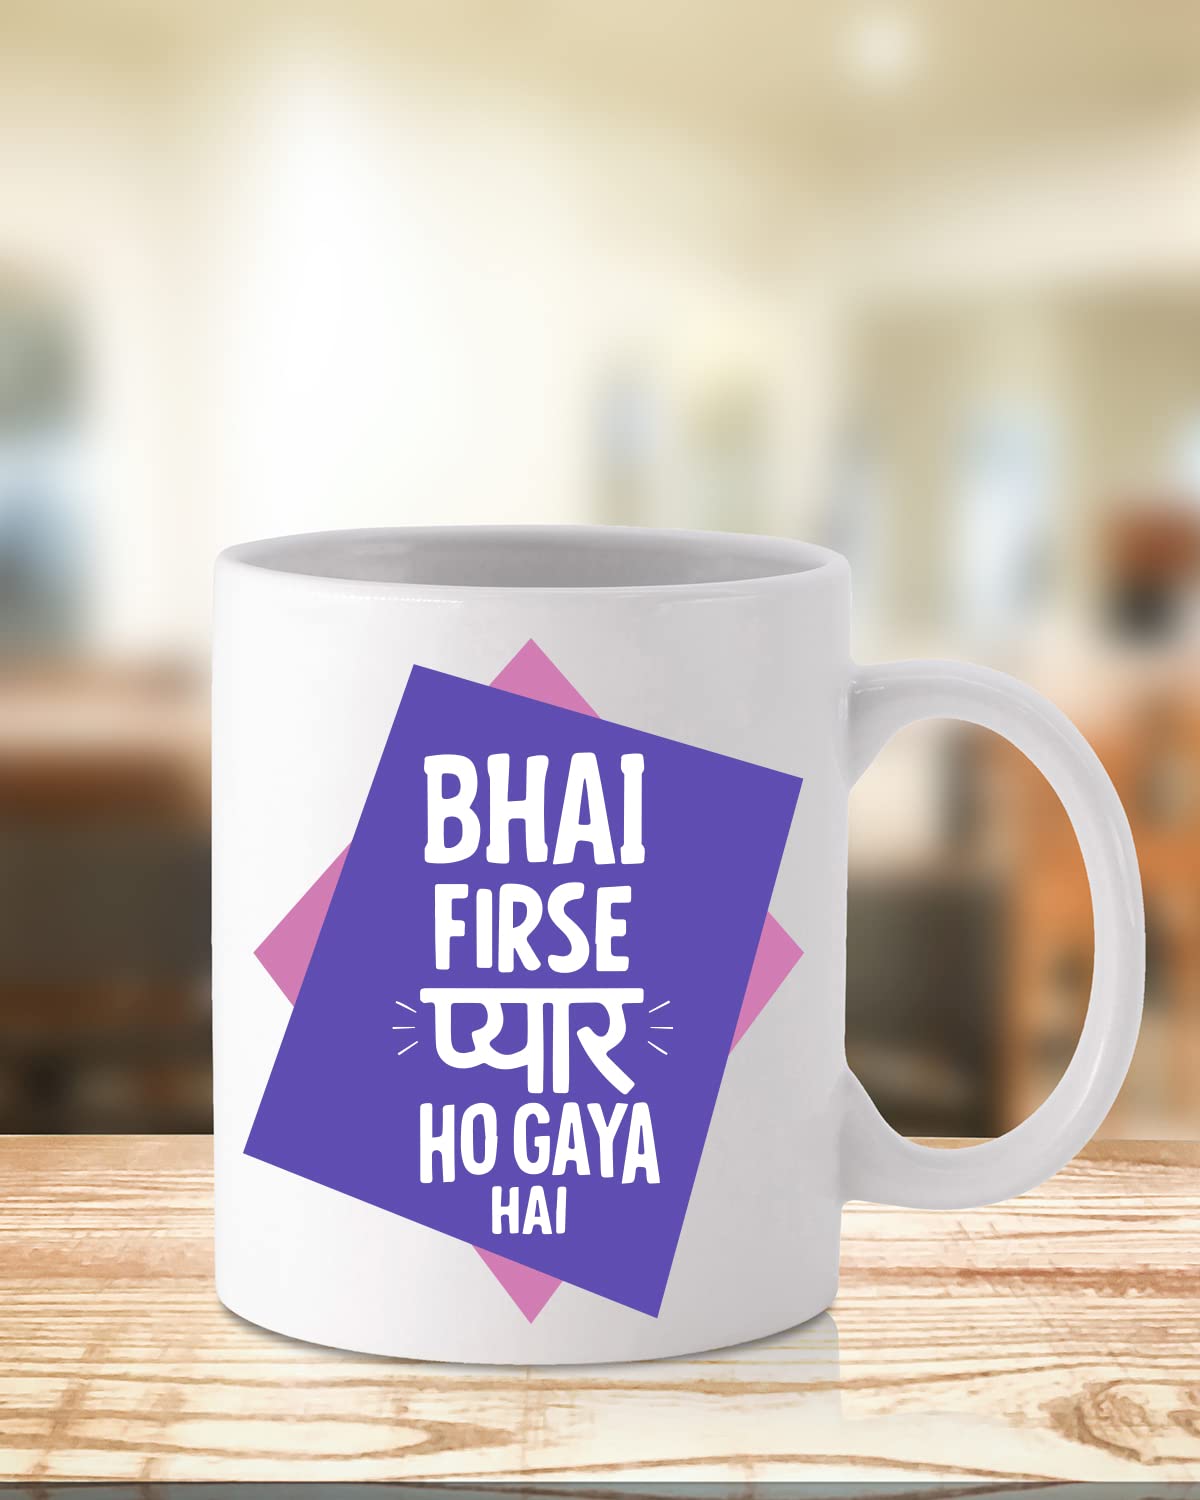 PYAAR HO GYA Coffee Mug - Gift for Friend, Birthday Gift, Birthday Mug, Motivational Quotes Mug, Mugs with Funny & Funky Dialogues, Bollywood Mugs, Funny Mugs for Him & Her